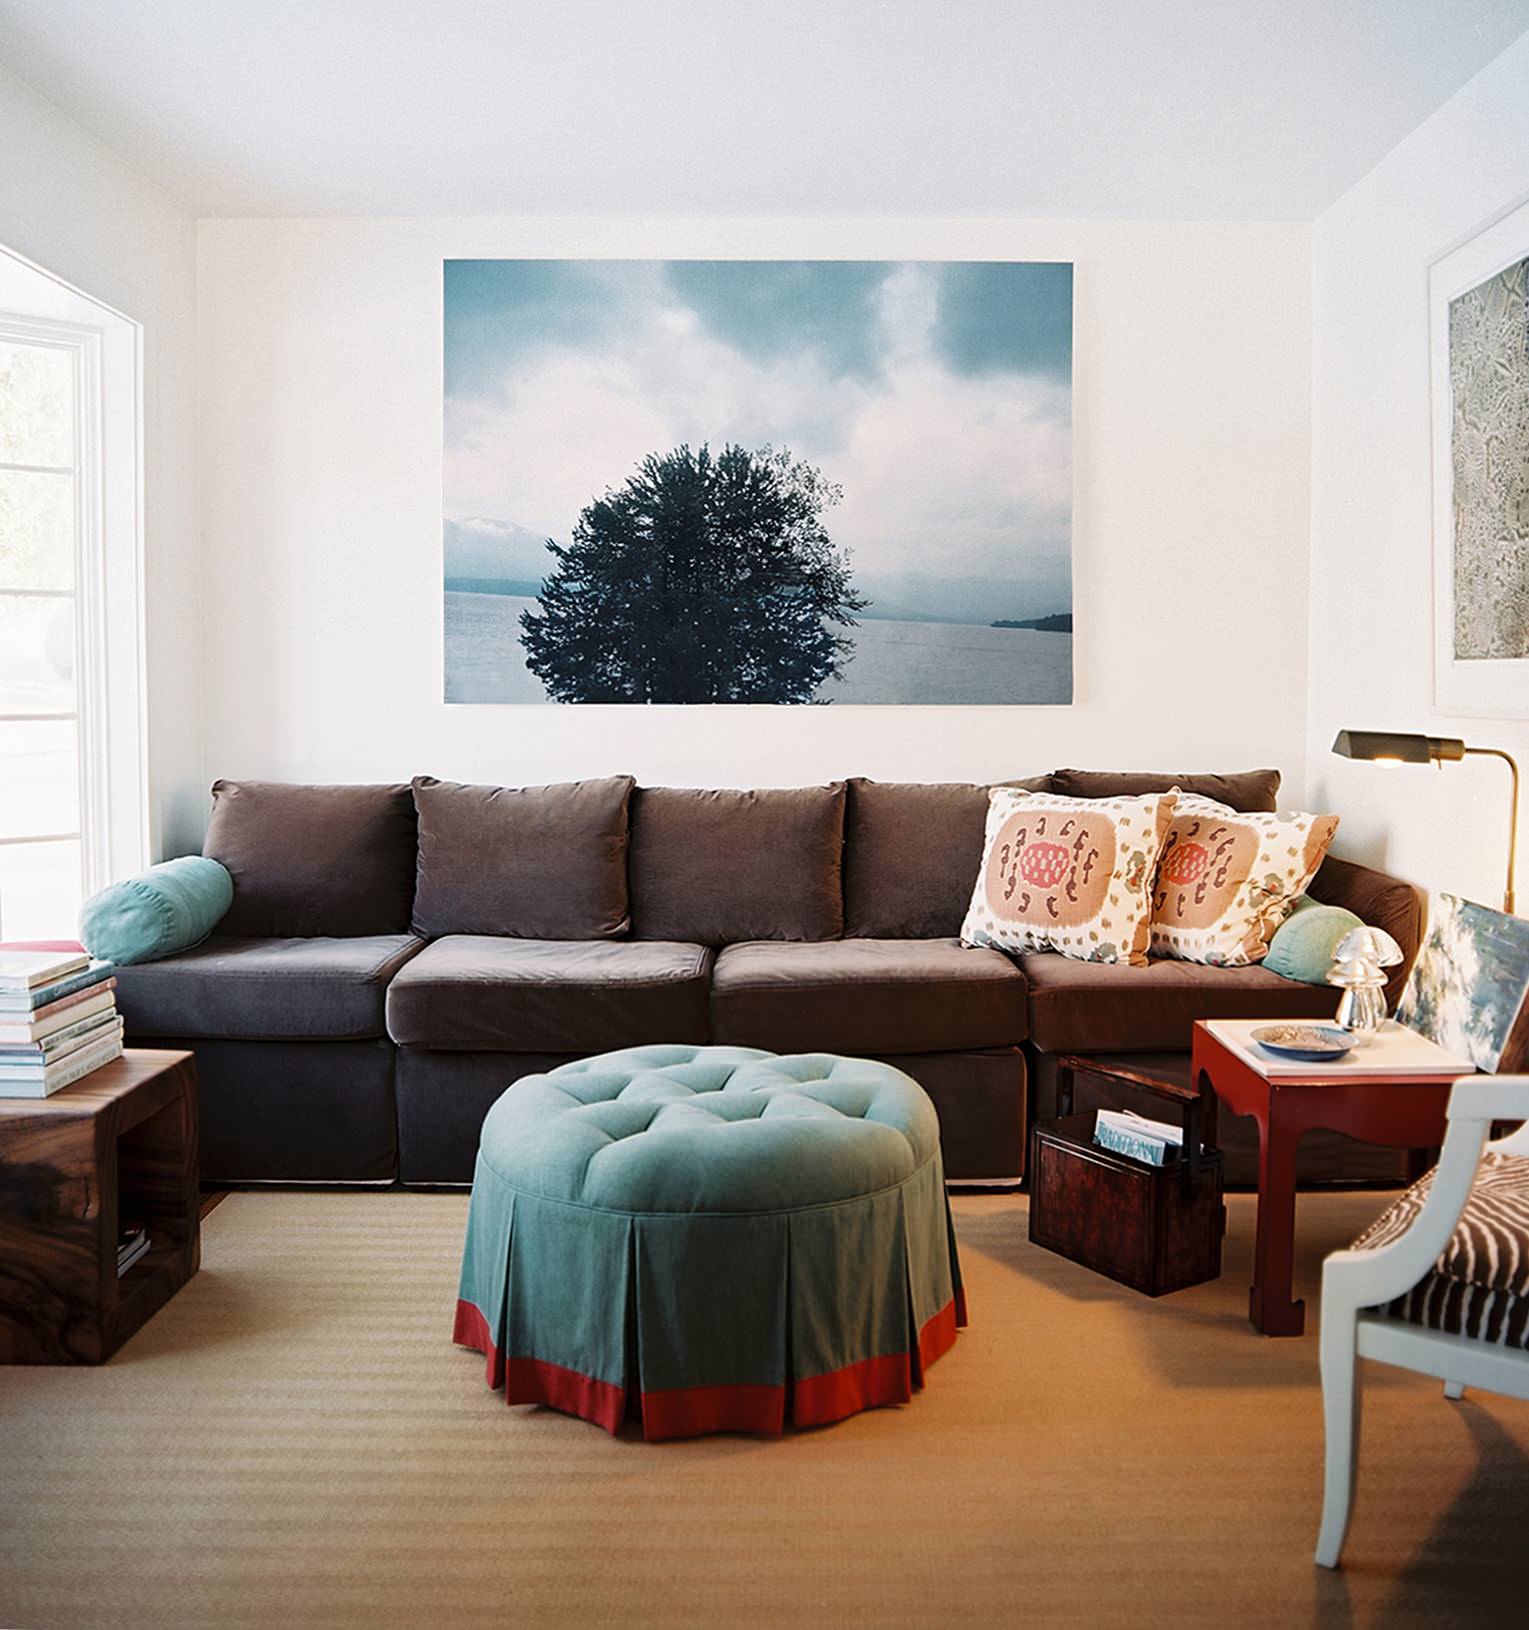 Картина диван. Картины над диваном. Картины над диваном в гостиной. Картины в интерьере гостиной над диваном. Картина комната гостиная.